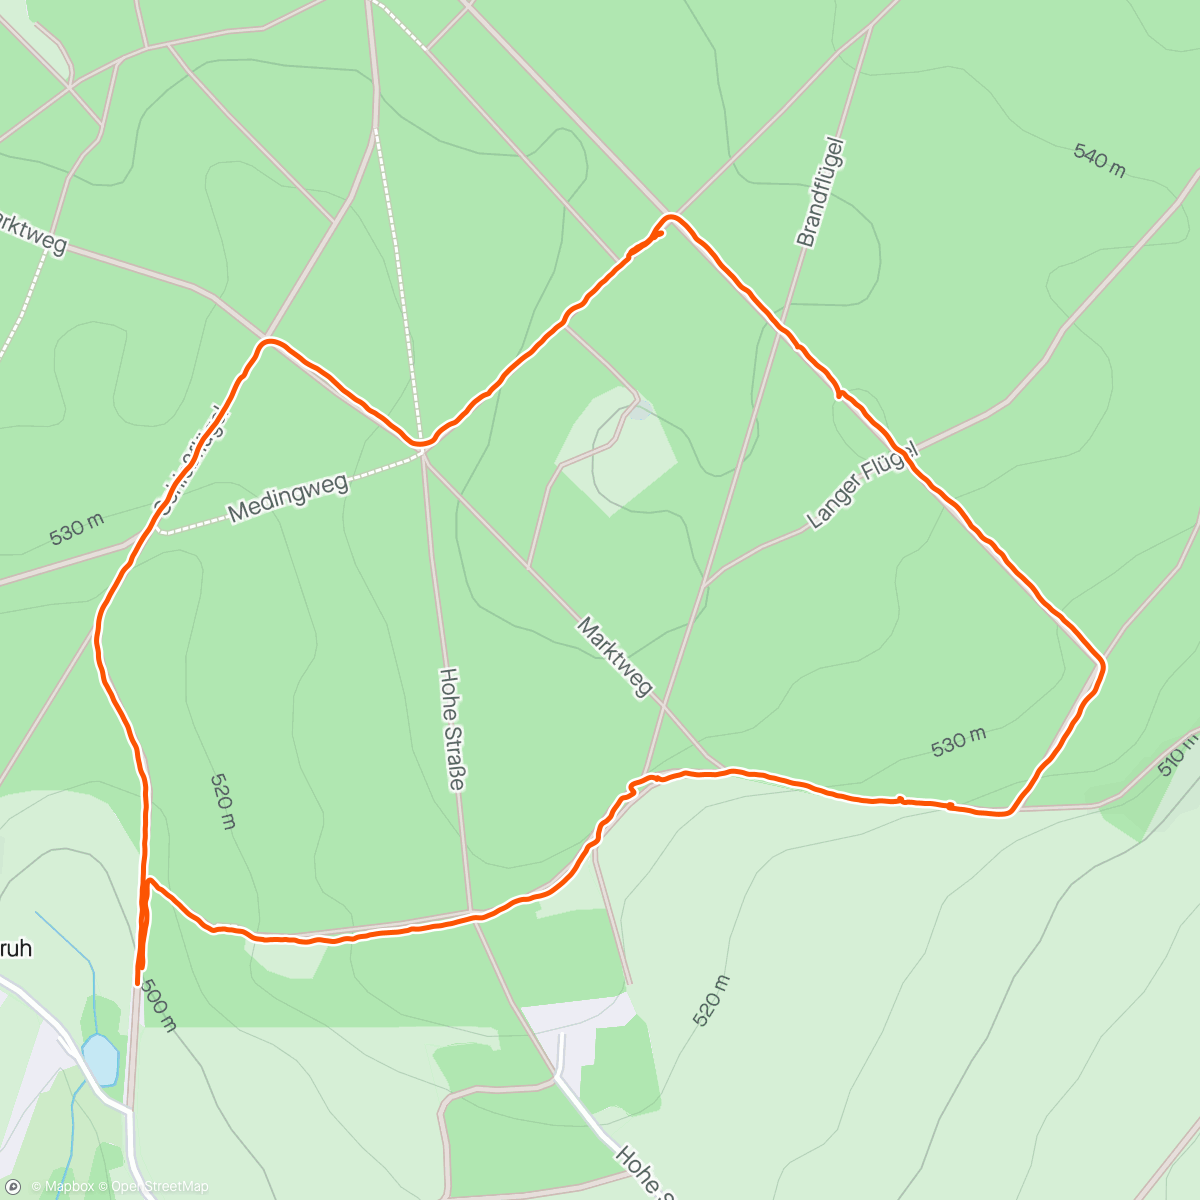 「Mittagswanderung im Schneckengrüner Wald」活動的地圖